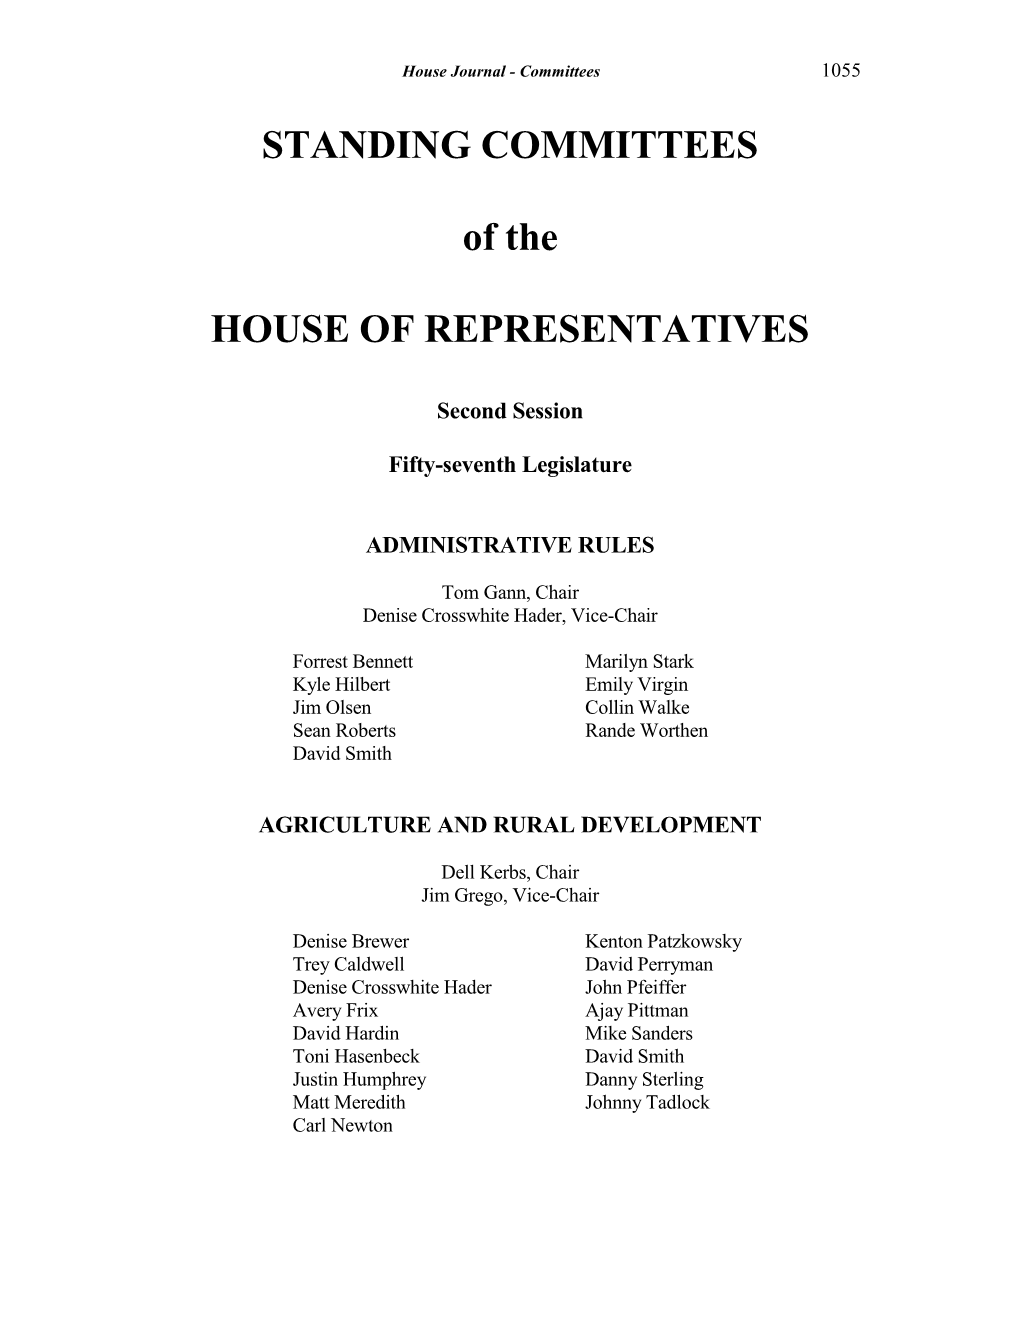 2020 Hcommittees